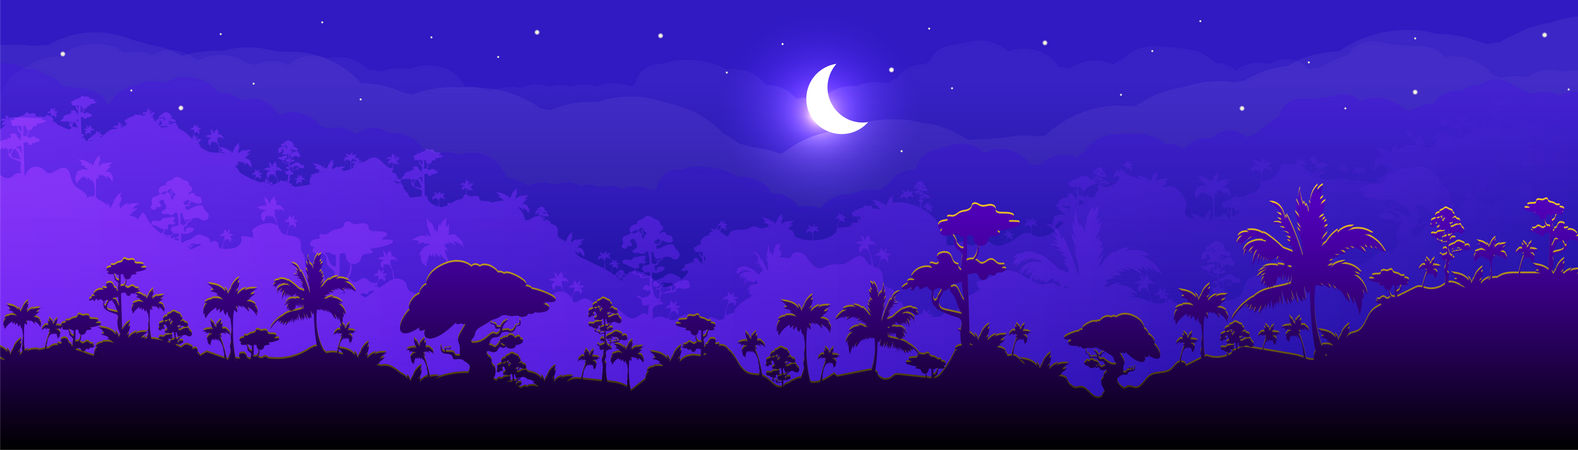 Paisaje de bosque nocturno en la selva  Ilustración